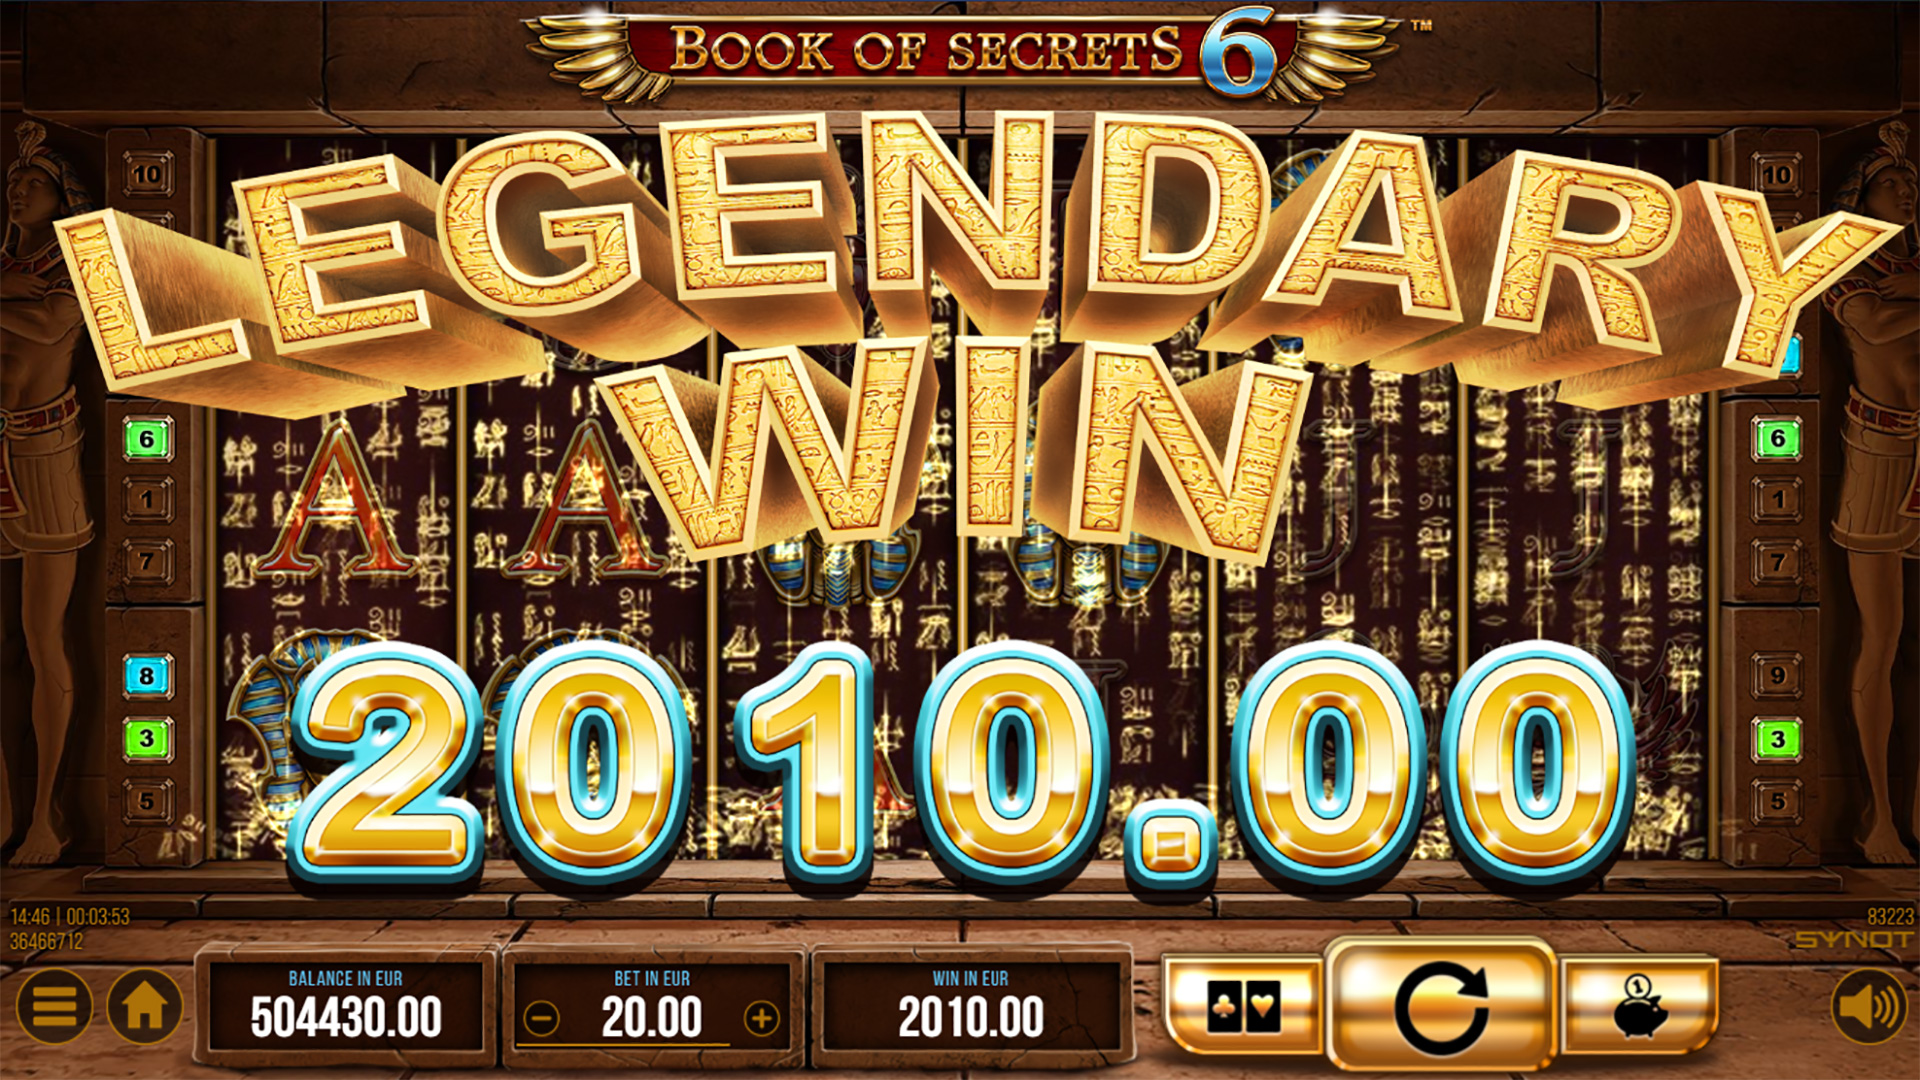 Book-of-Secrets-6-legendary-Win-base-game.jpg